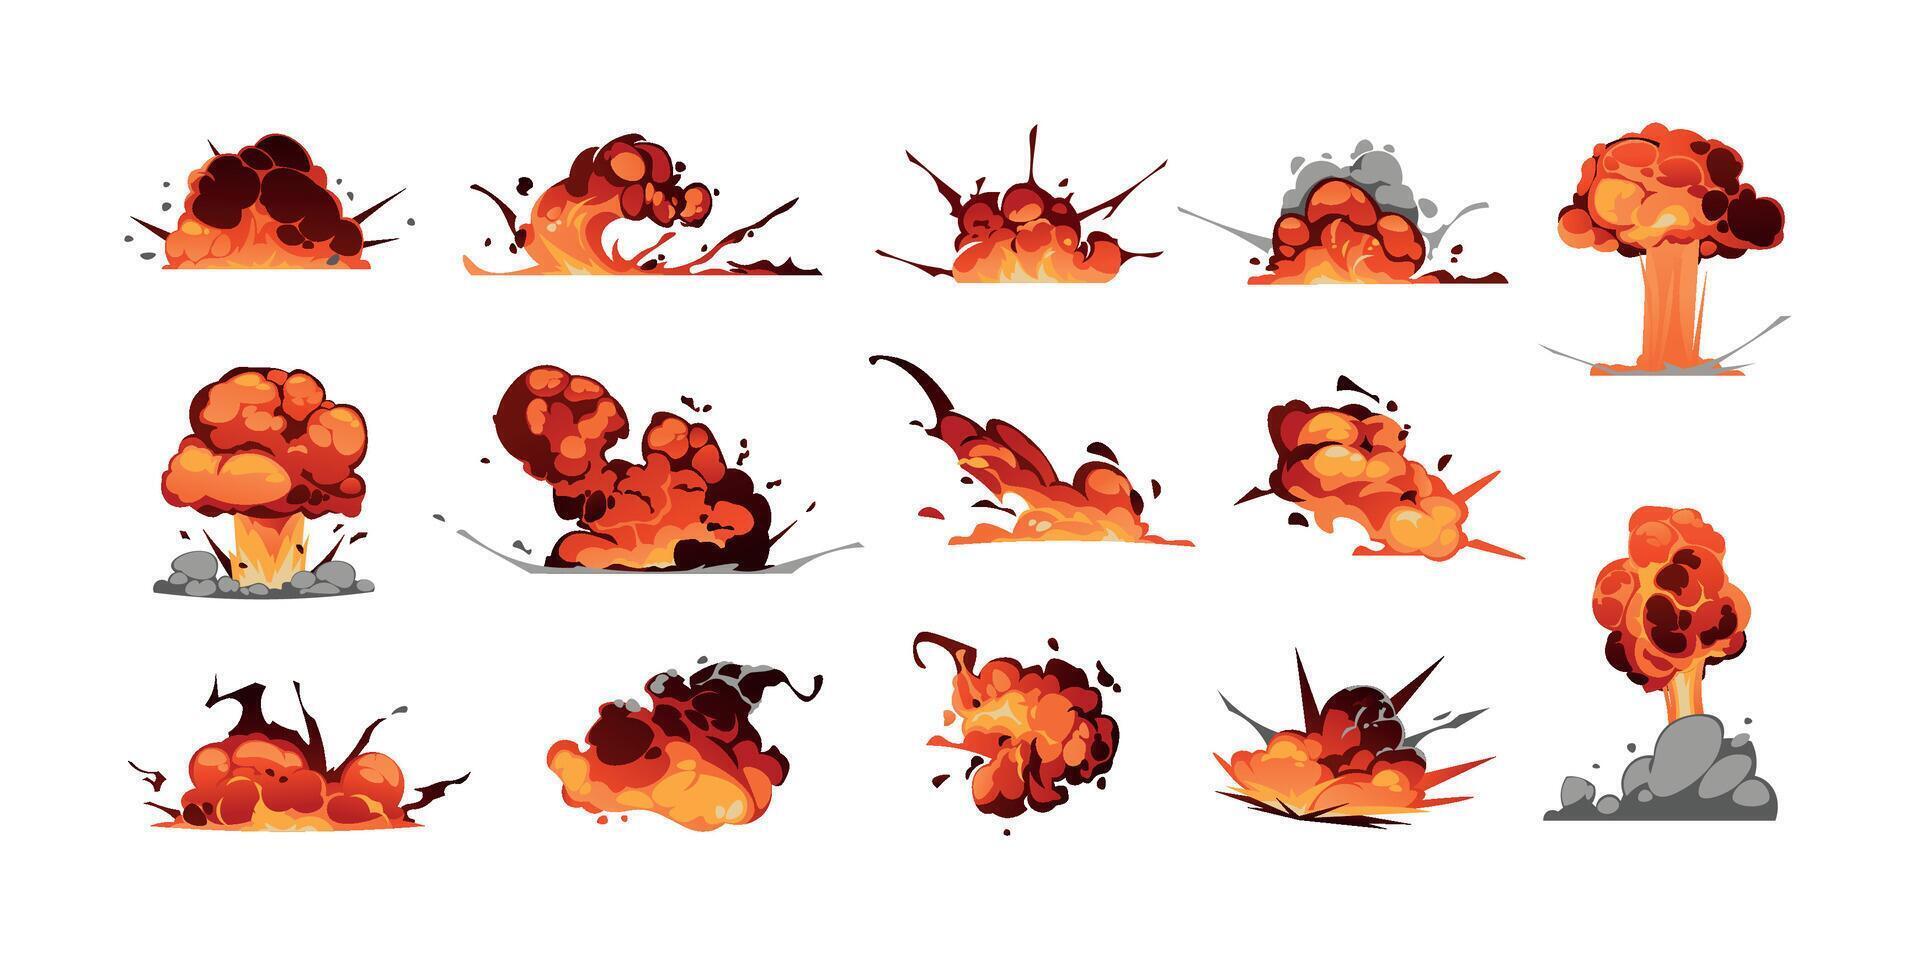 comico esplosione effetto. cartone animato bomba esplosione e dinamite scoppio grafico con fuoco e Fumo, gioco energia scoppiare animazione bene. vettore isolato impostato